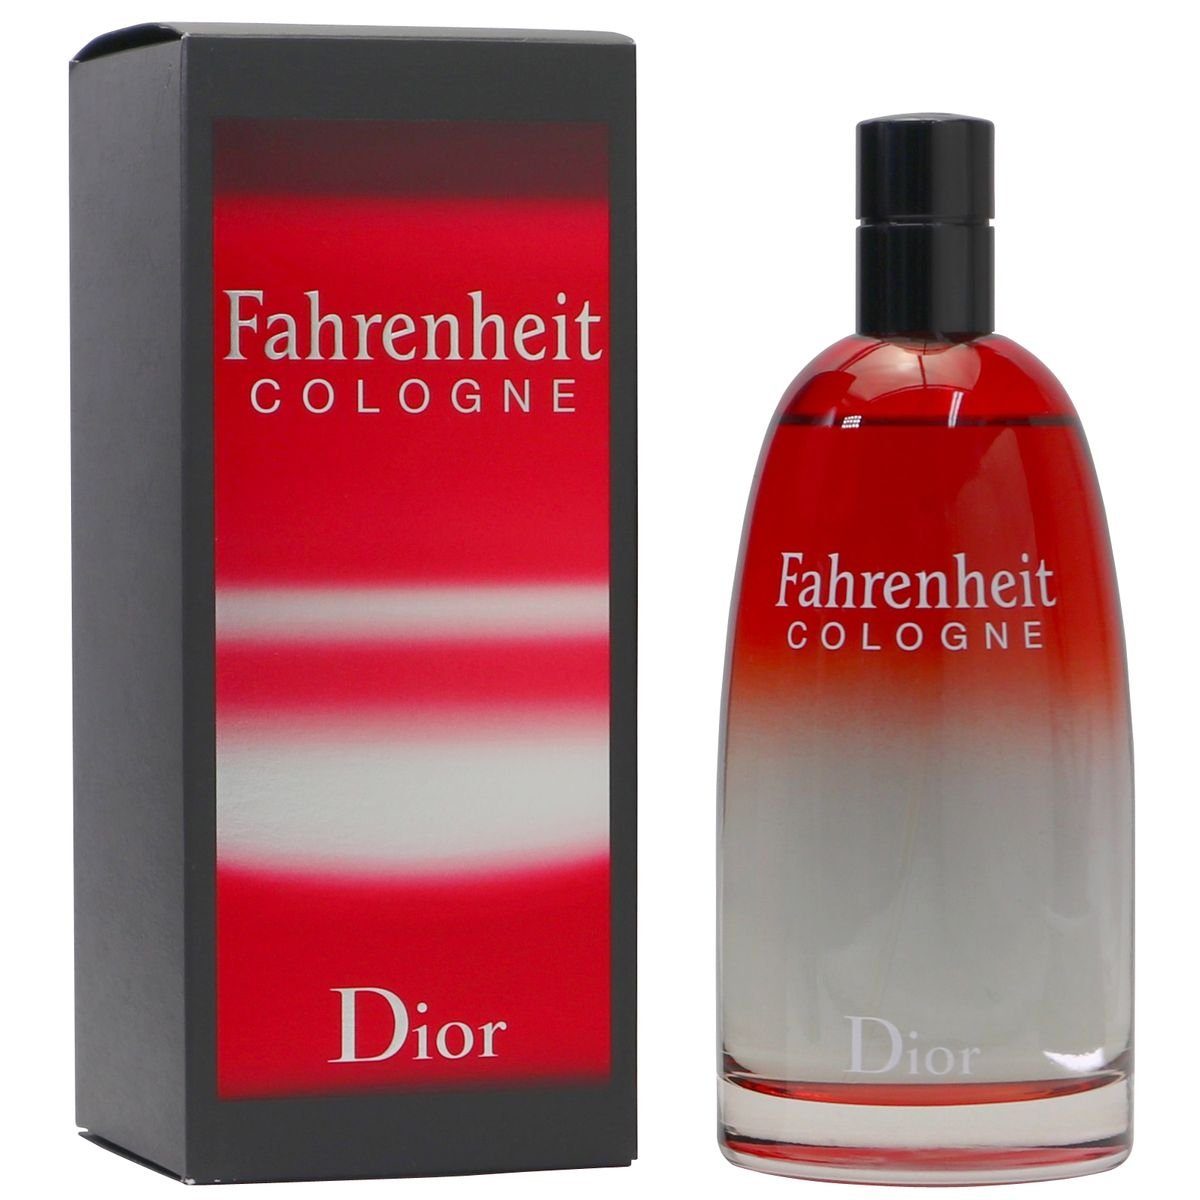 Christian Cologne ml Dior Eau de Cologne Spray Fahrenheit 200 Dior